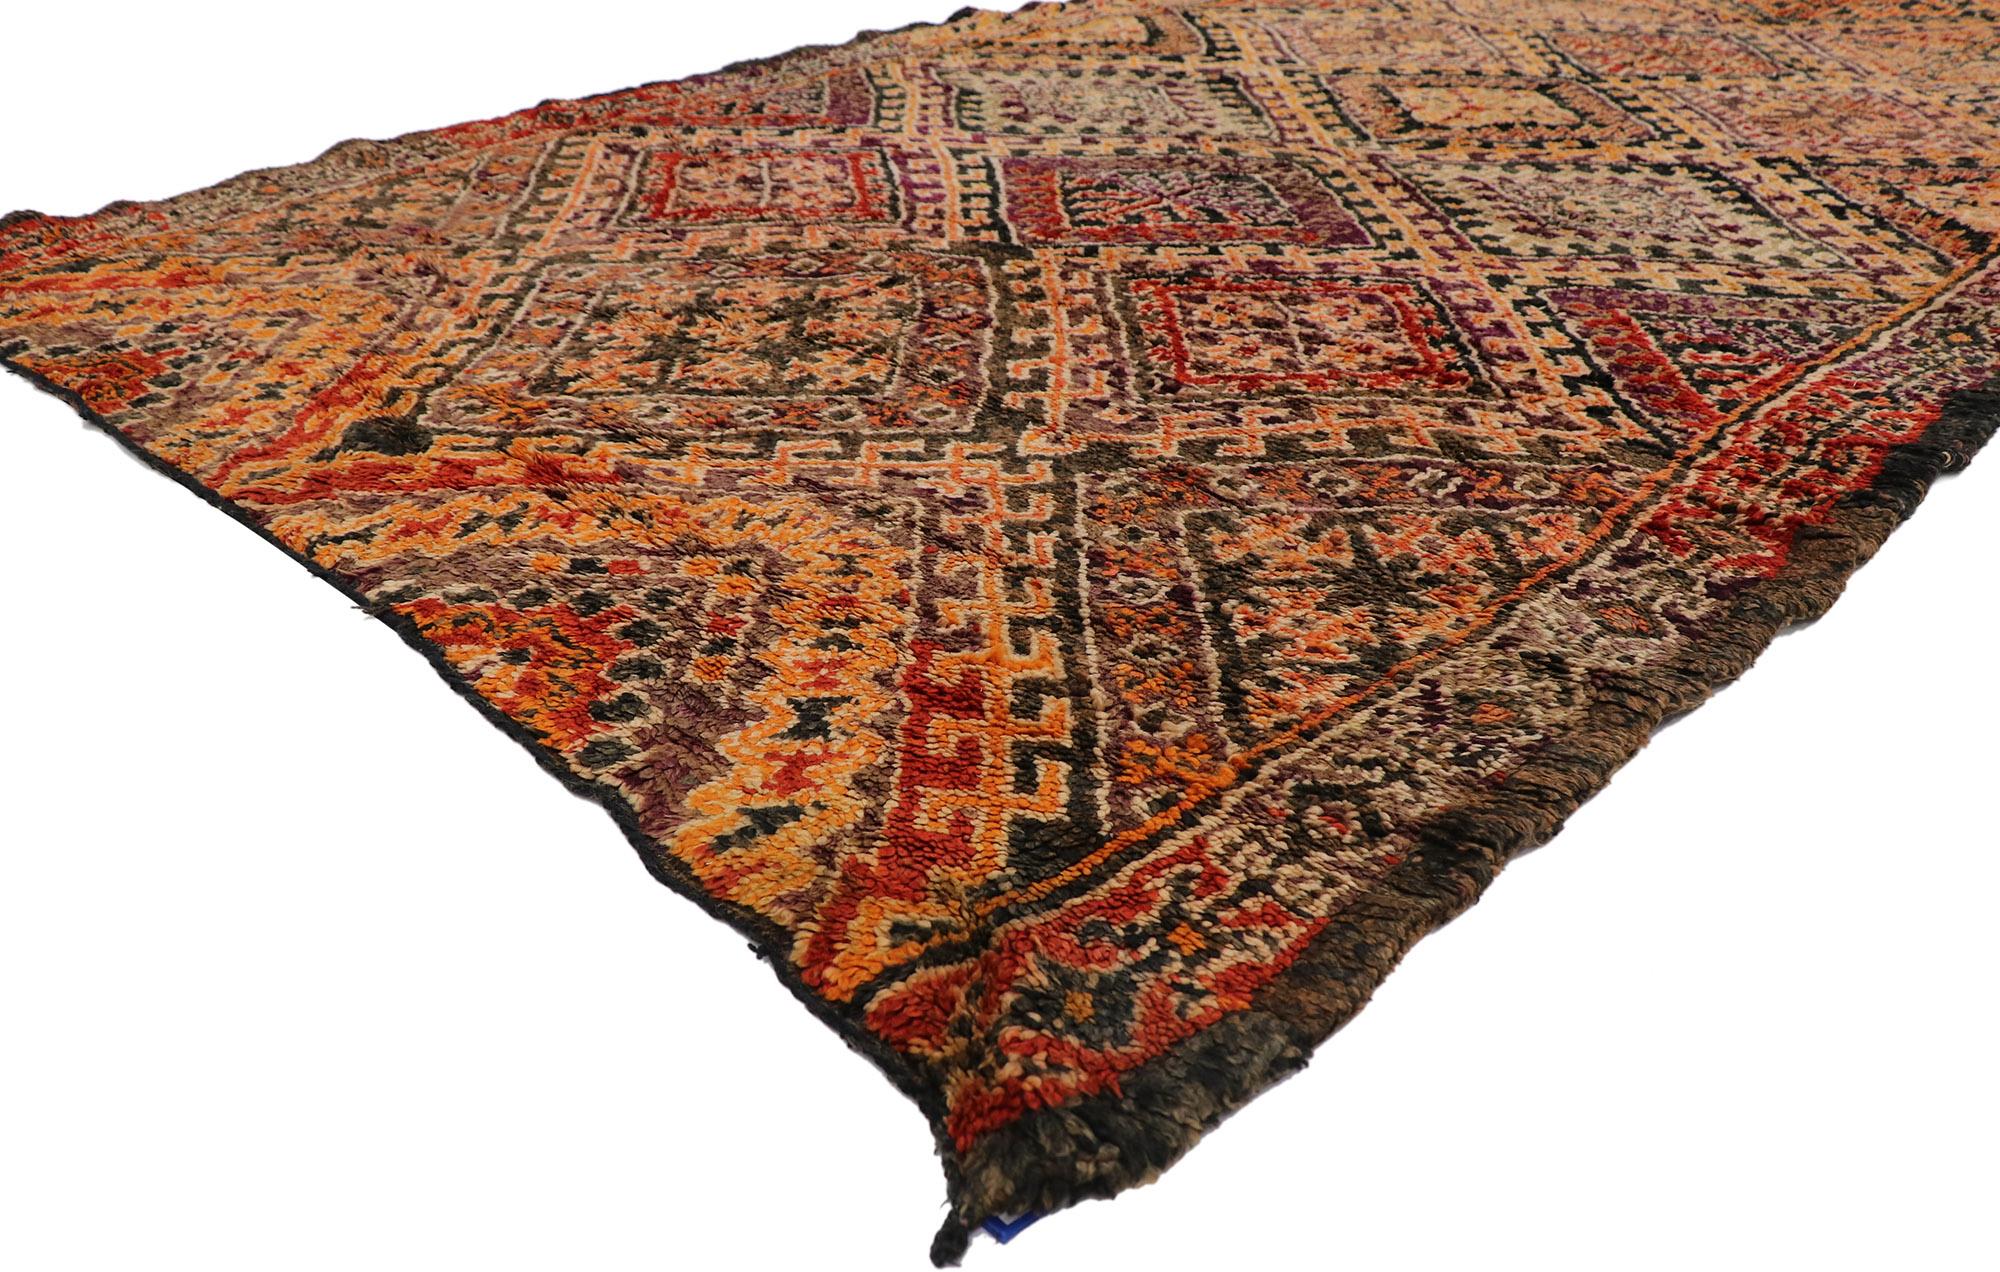 21287 tapis marocain berbère Beni M'Guild vintage de style Mid-Century Modern 06'08 x 12'07. Ce tapis berbère vintage Beni M'Guild en laine nouée à la main est une vision captivante de la beauté du tissage. Il présente un design expressif et